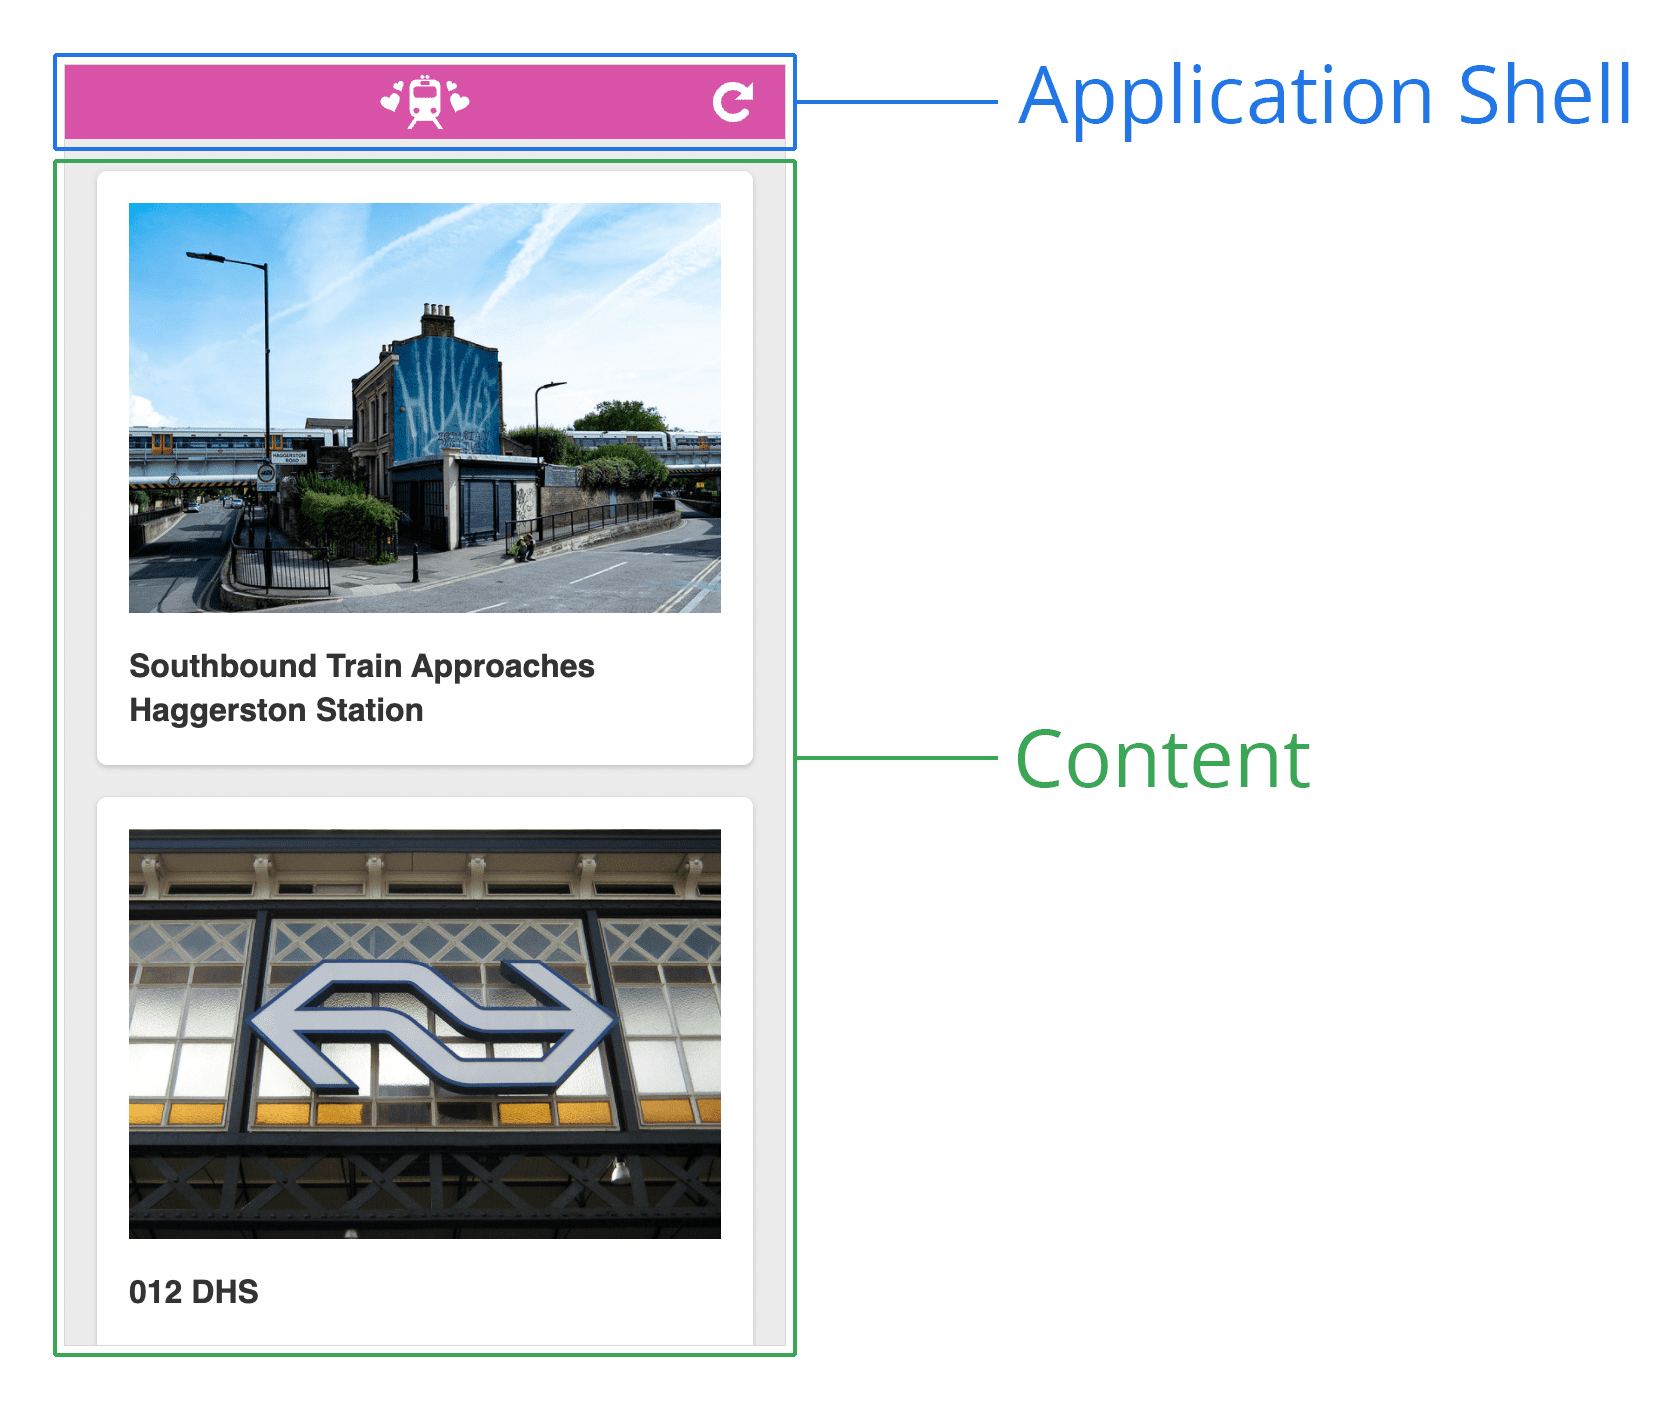 แผนภาพของ Application Shell ซึ่งเป็นภาพหน้าจอของหน้าเว็บที่มีส่วนหัวที่ด้านบนและพื้นที่เนื้อหาที่ด้านล่าง ส่วนหัวจะมีป้ายกำกับว่า &quot;Application Shell&quot; แต่ด้านล่างจะมีป้ายกำกับเป็น &quot;Content&quot;